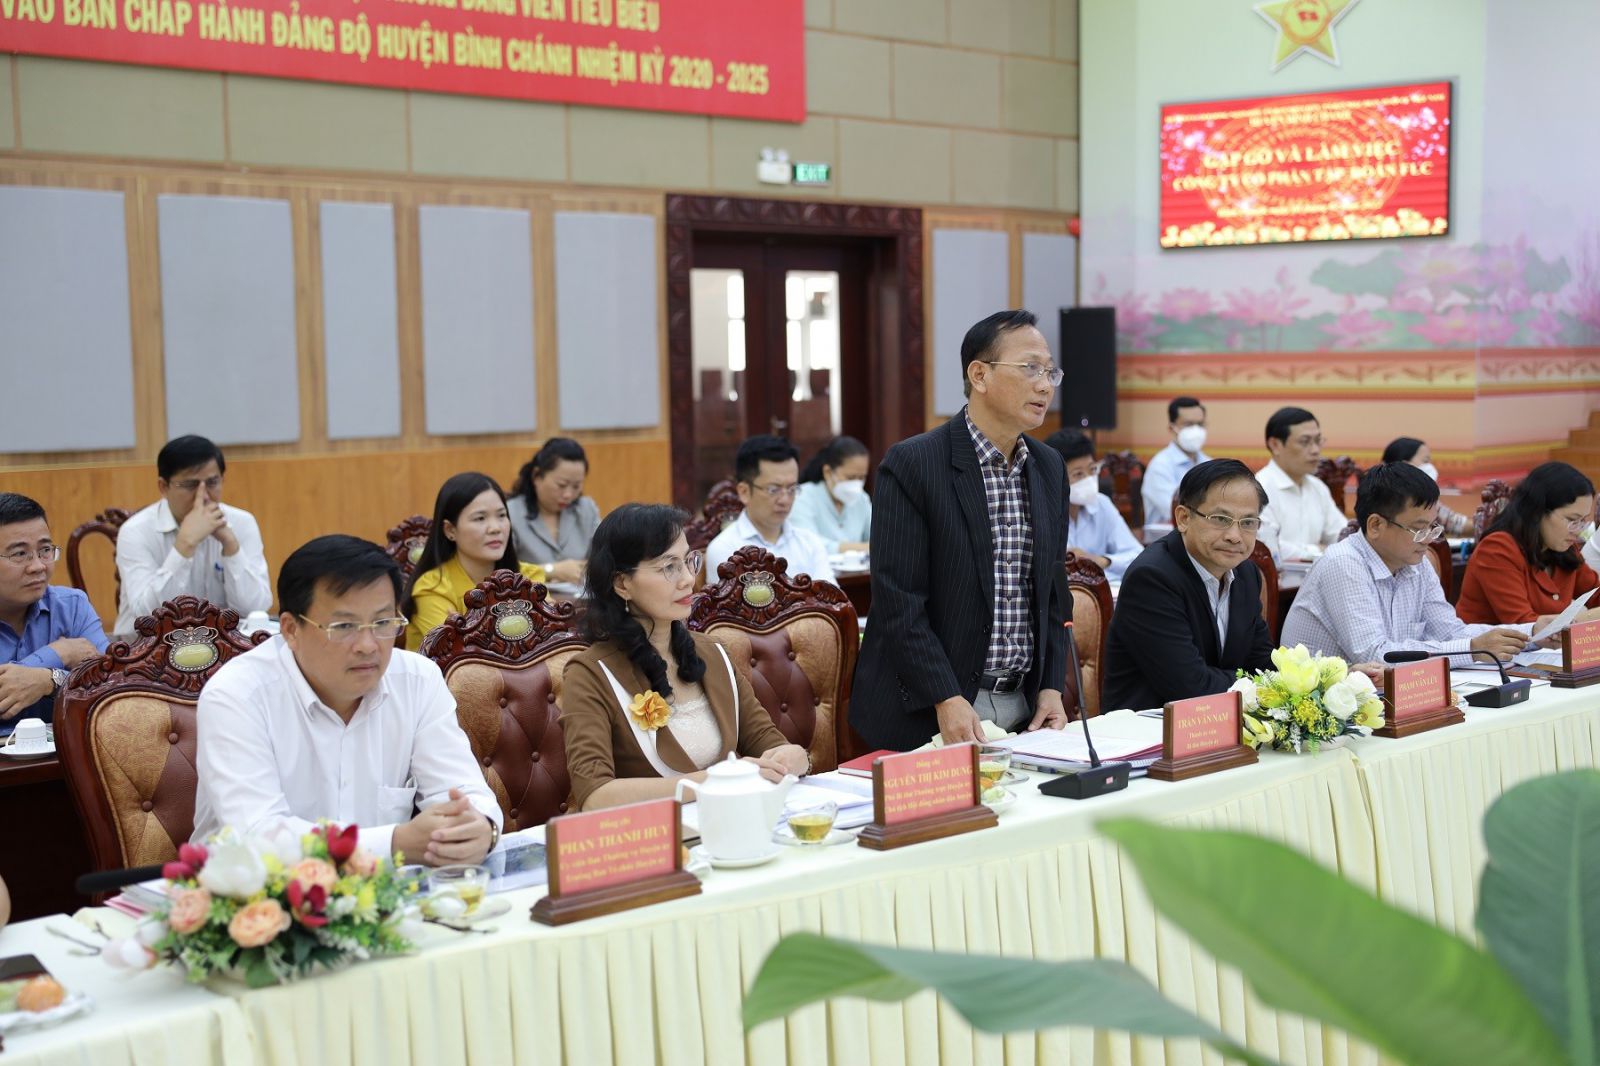 Ảnh 3: Ông Trần Văn Nam, Thành ủy viên, Bí thư Huyện ủyBình Chánh phát biểu tại sự kiện